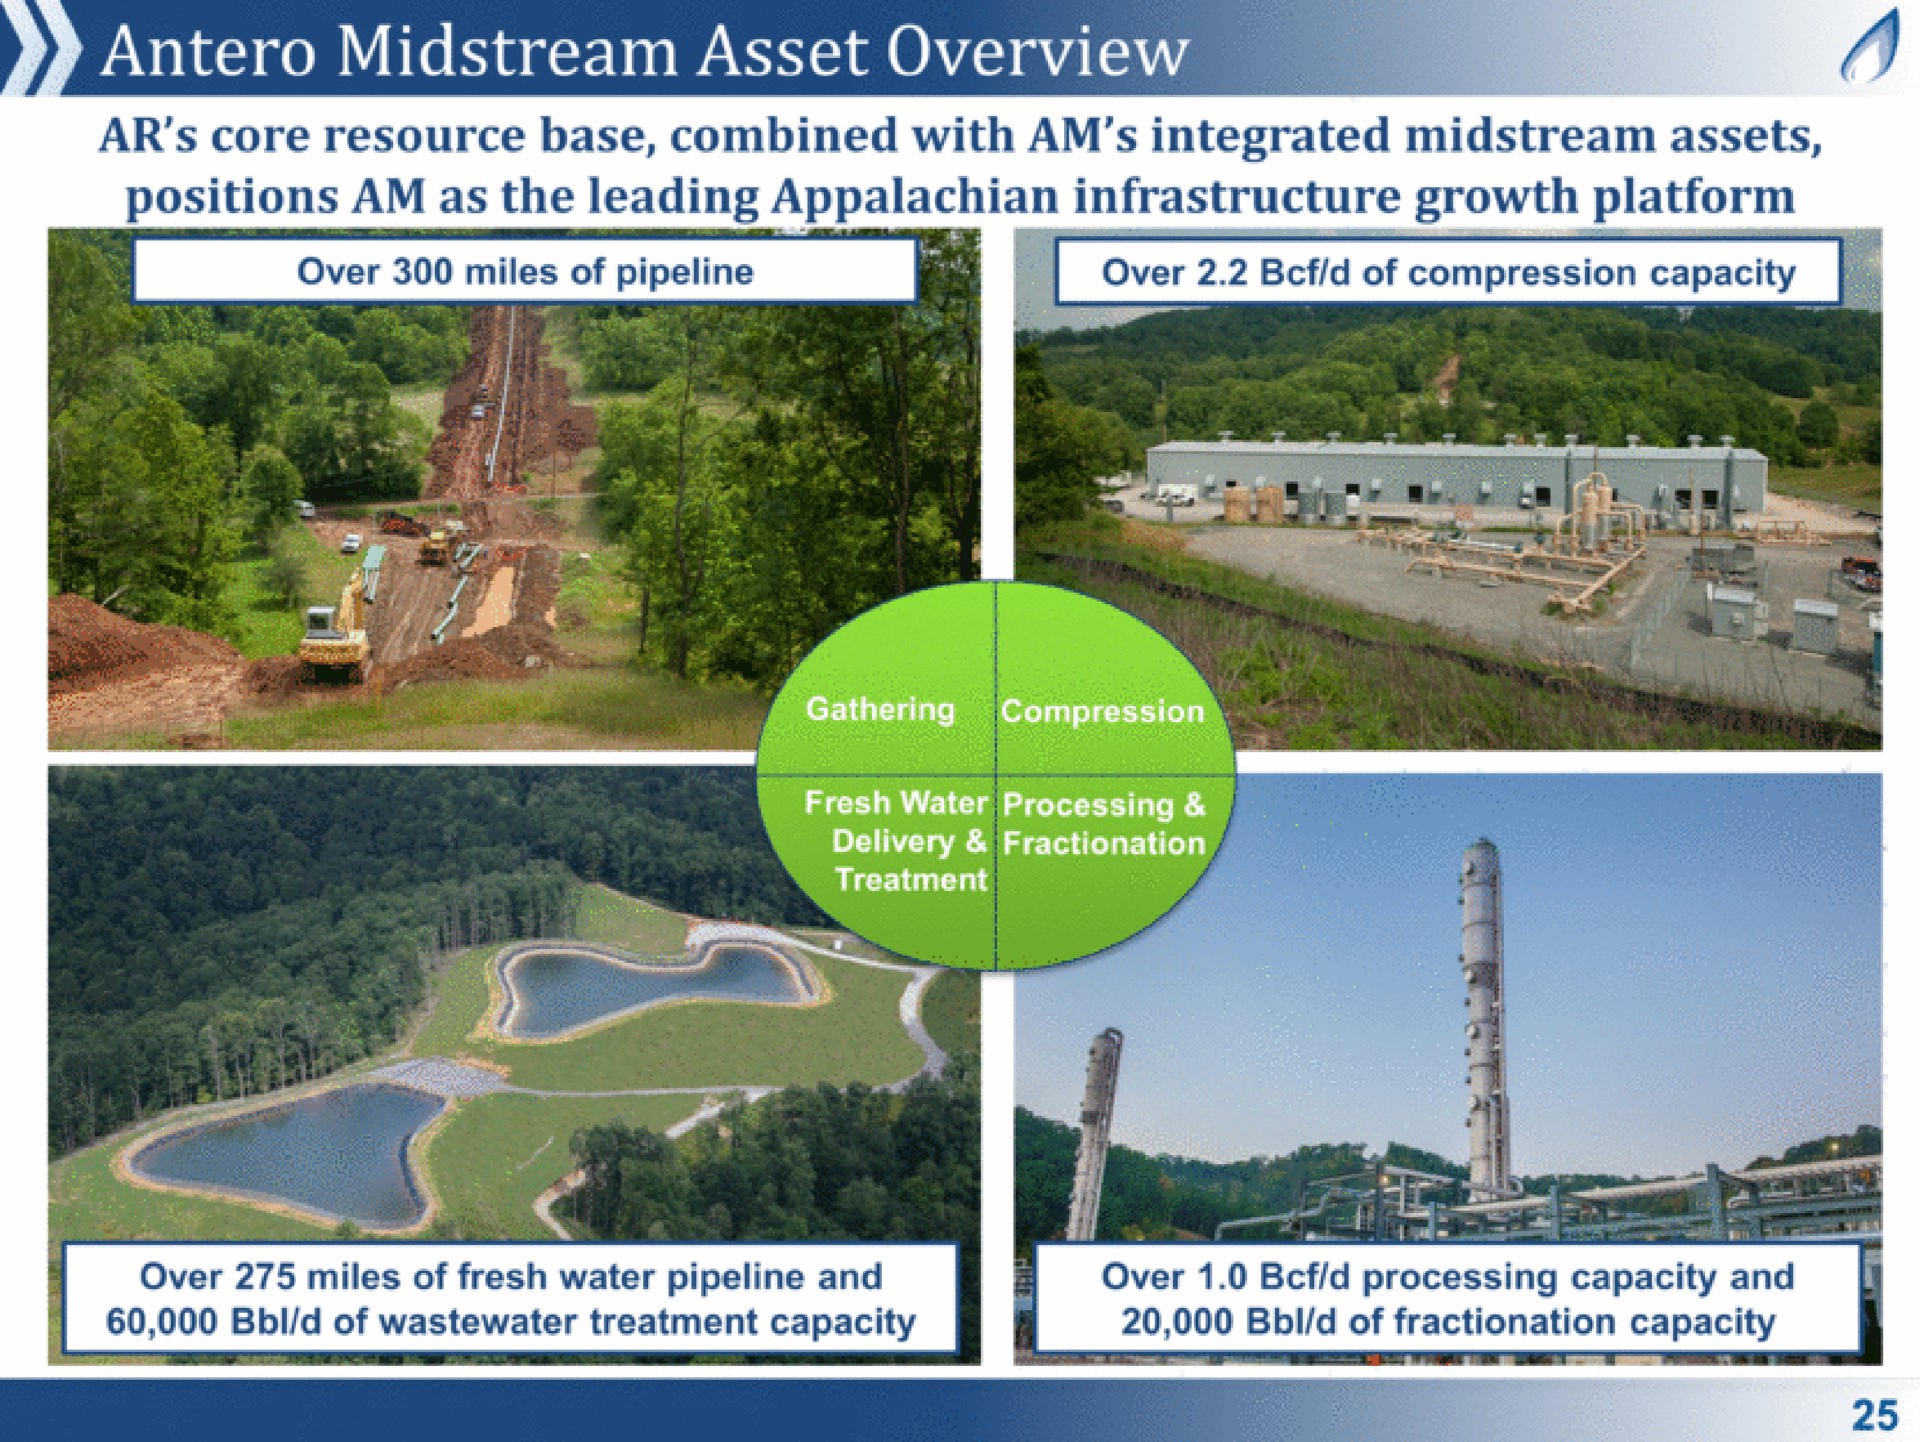 midstream asset overview | Antero Midstream Partners